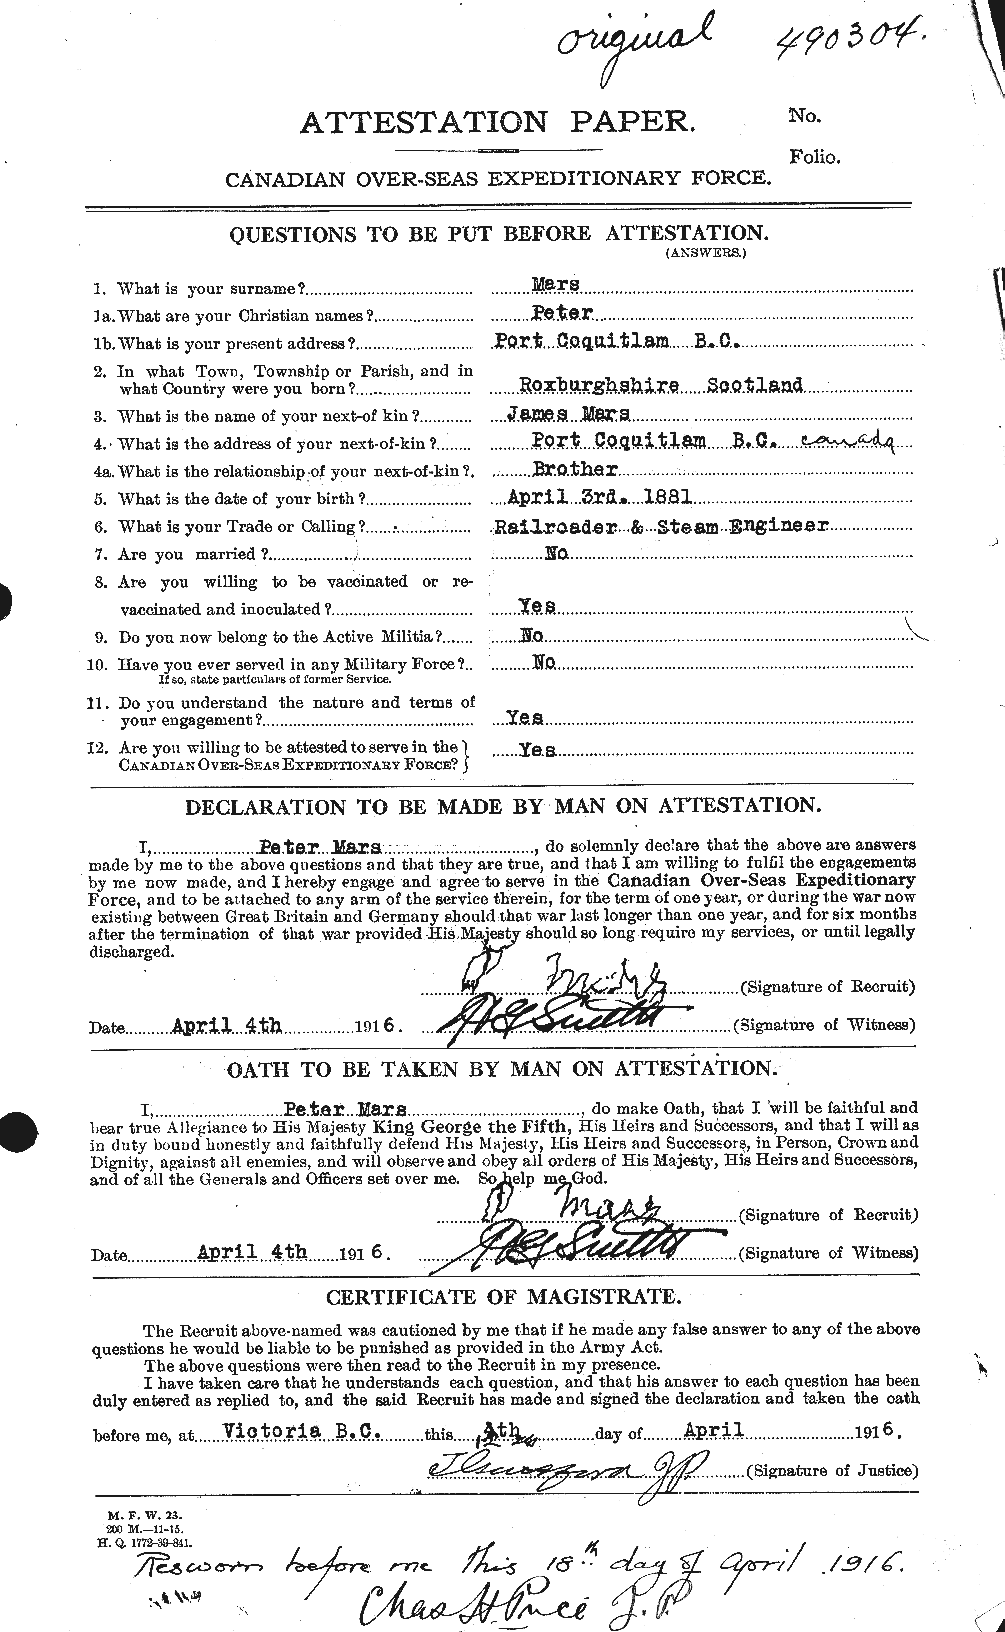 Dossiers du Personnel de la Première Guerre mondiale - CEC 486870a